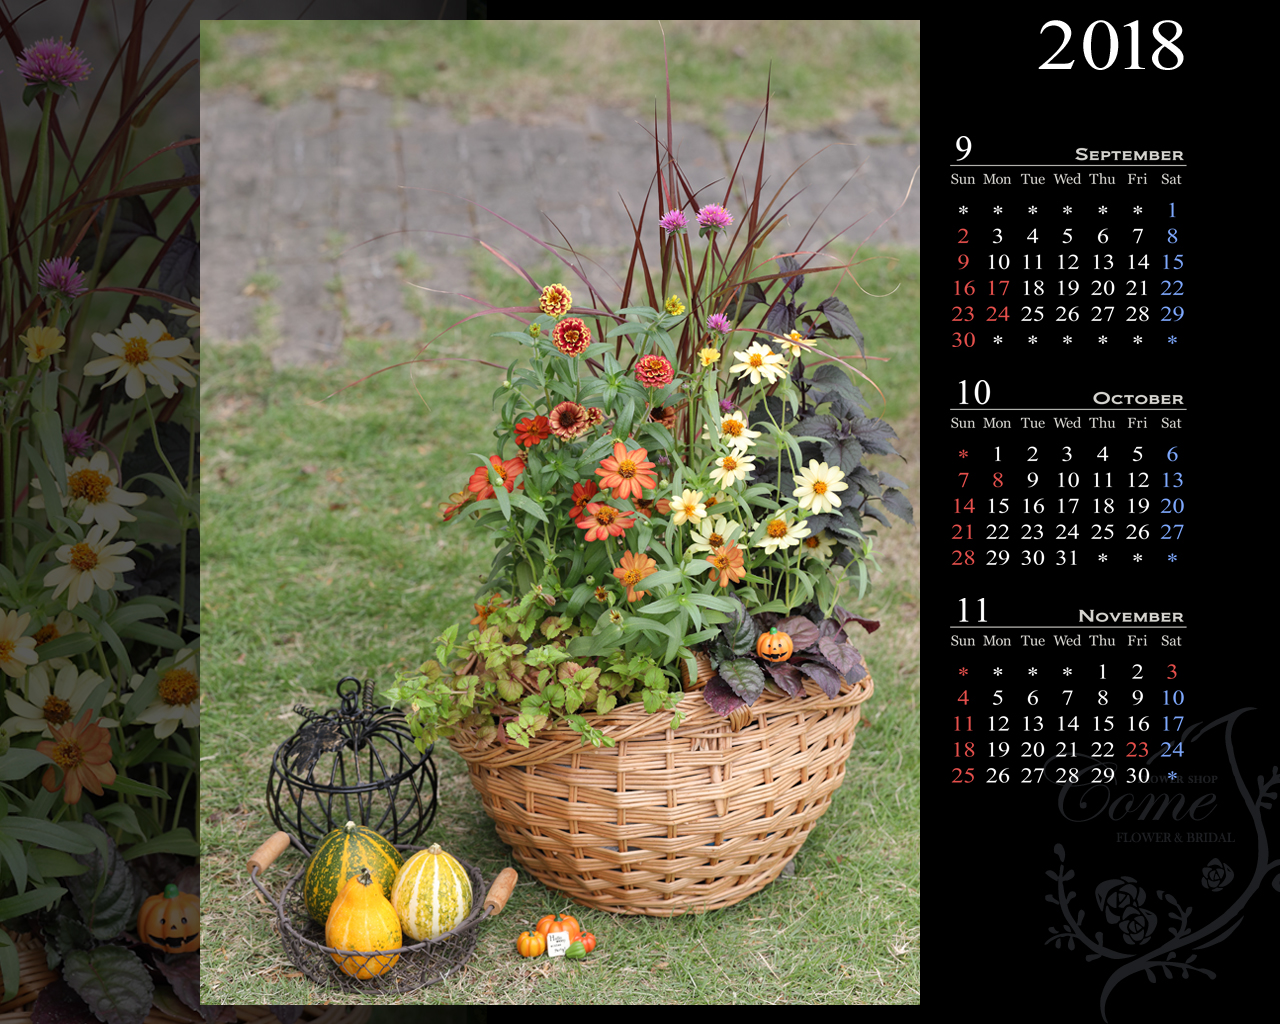 18年壁紙カレンダープレゼント 無料 花の写真を使った壁紙カレンダーを無料でダウンロード フラワーショップ花夢